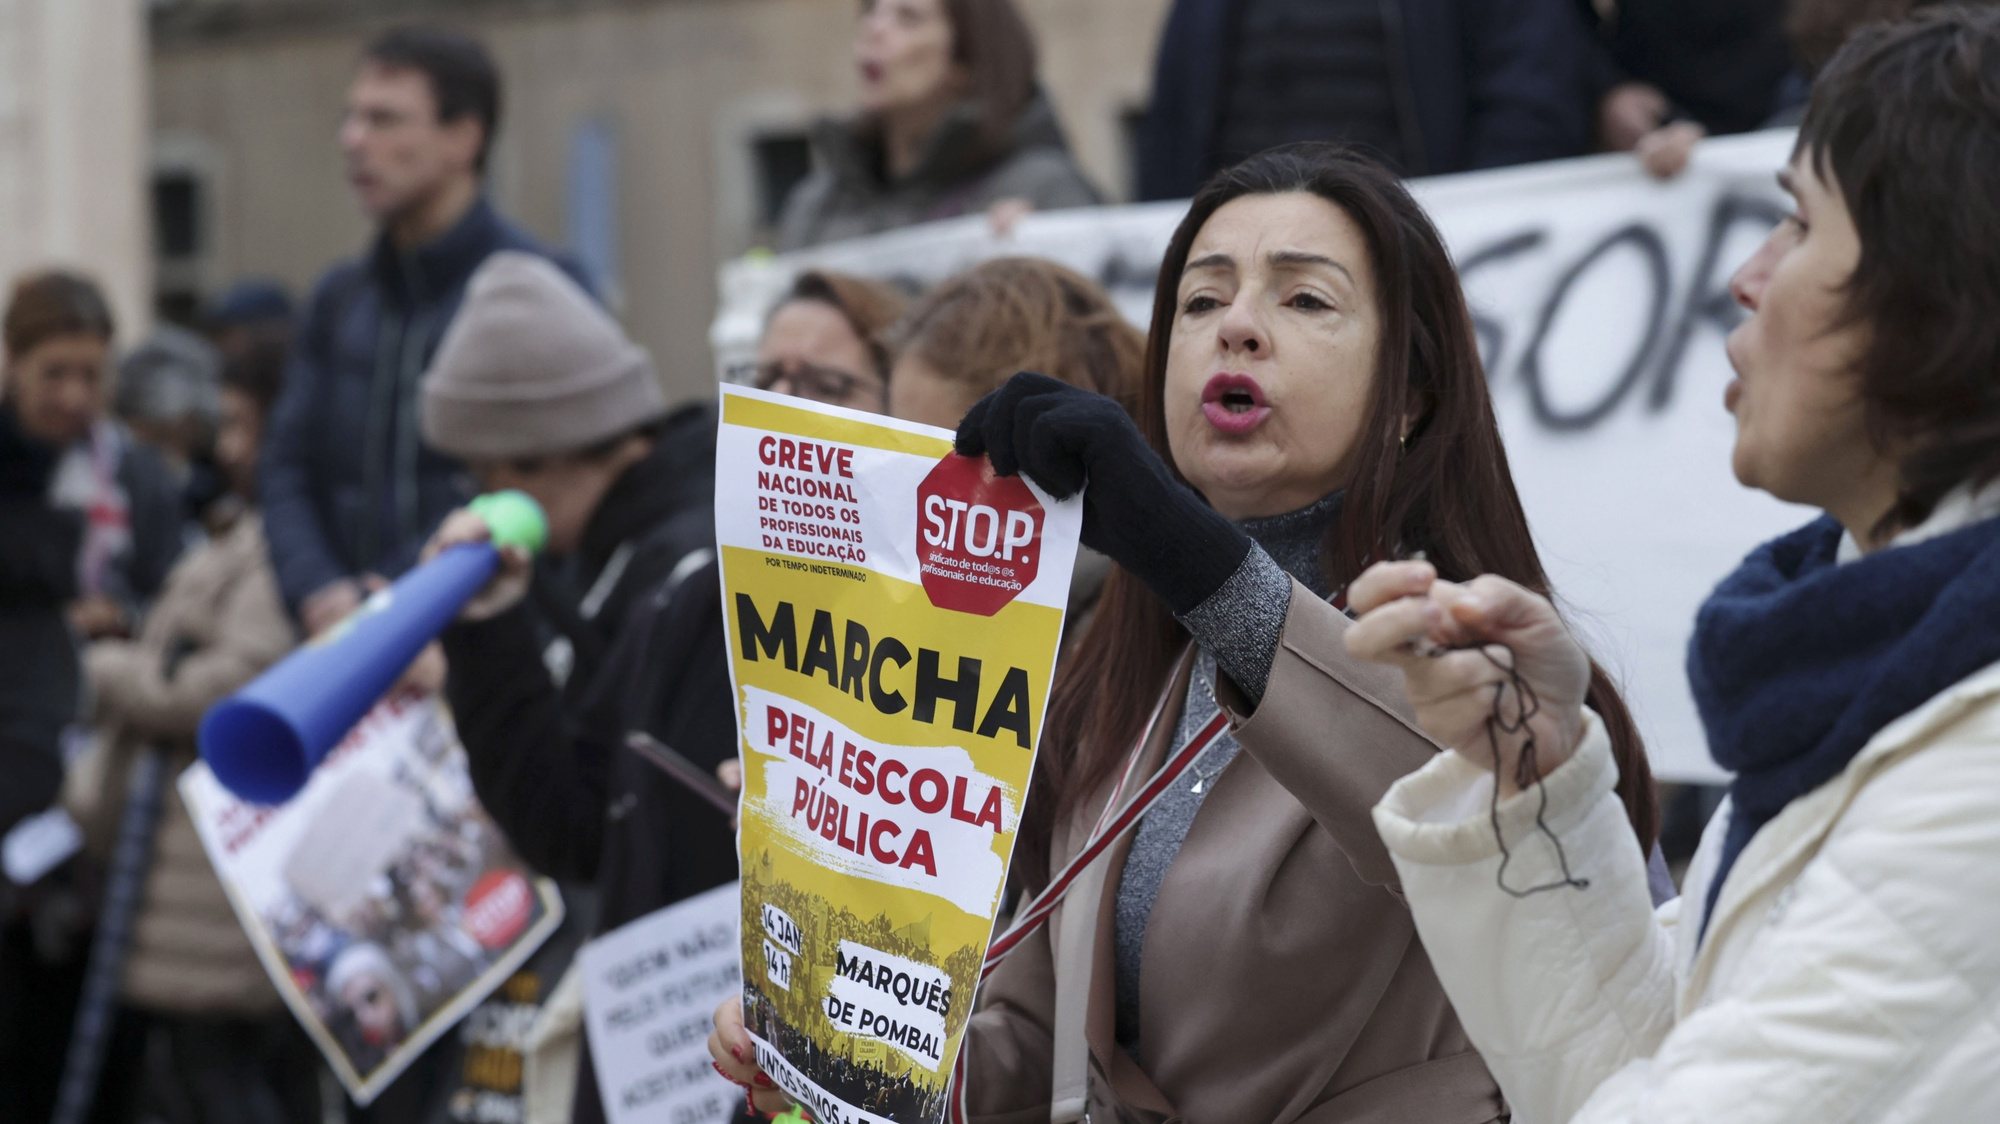 Protesto de professores em defesa da escola pública convocado pelo S.TO.P. - Sindicato de Todos os Profissionais da Educação junto à Câmara Municipal de Lisboa, 7 de janeiro de 2023.   MANUEL DE ALMEIDA/LUSA